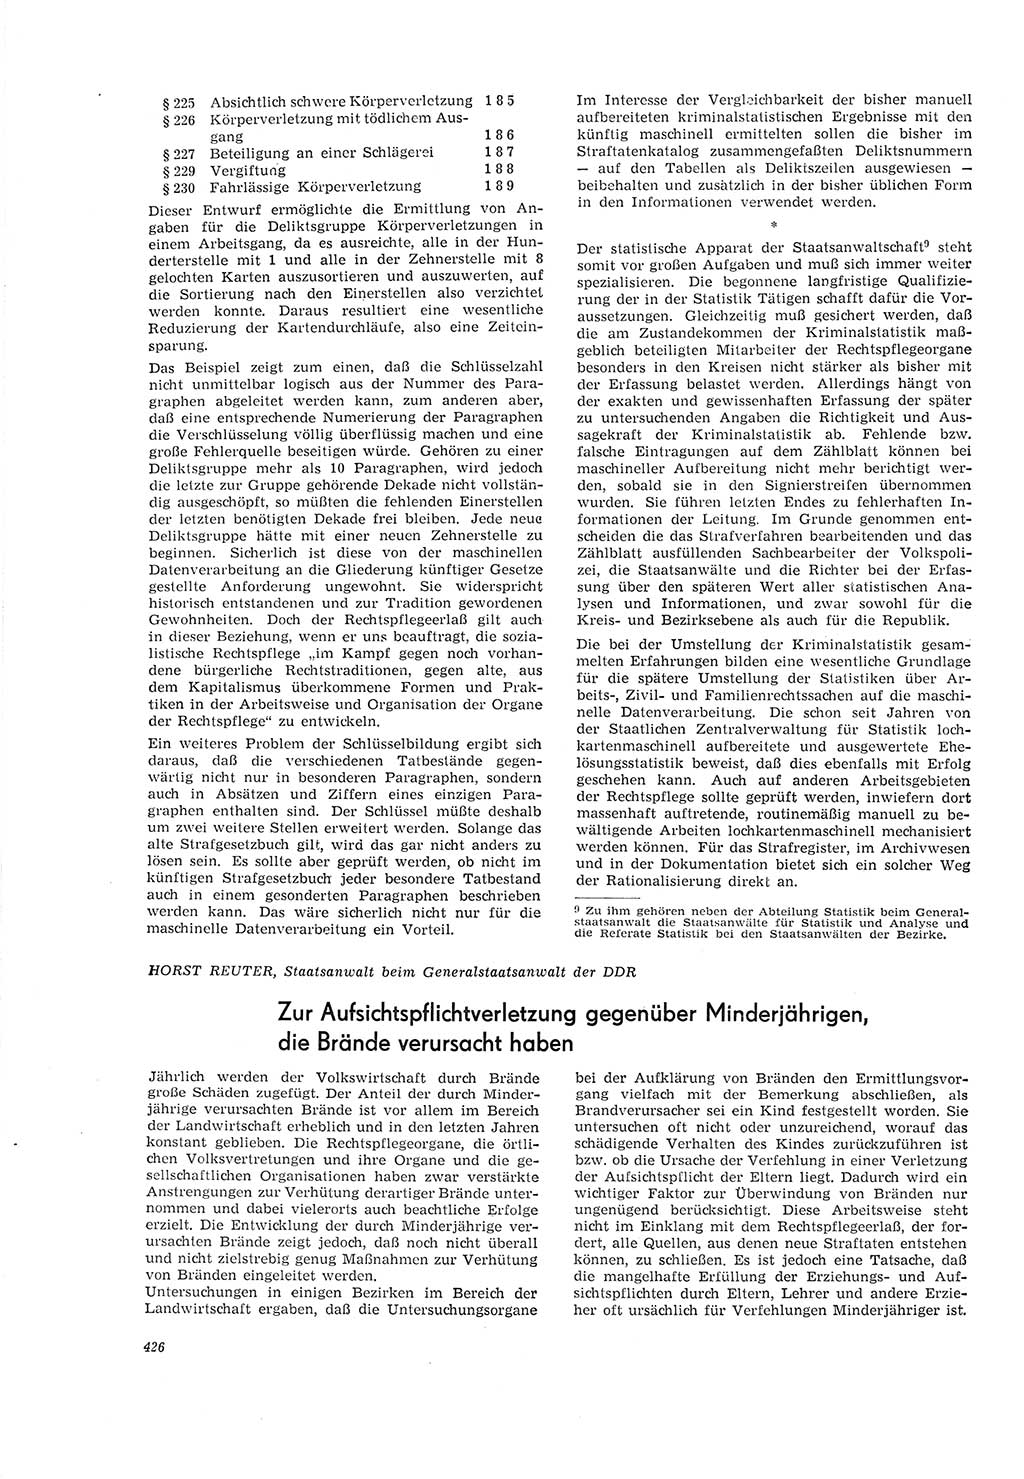 Neue Justiz (NJ), Zeitschrift für Recht und Rechtswissenschaft [Deutsche Demokratische Republik (DDR)], 20. Jahrgang 1966, Seite 426 (NJ DDR 1966, S. 426)